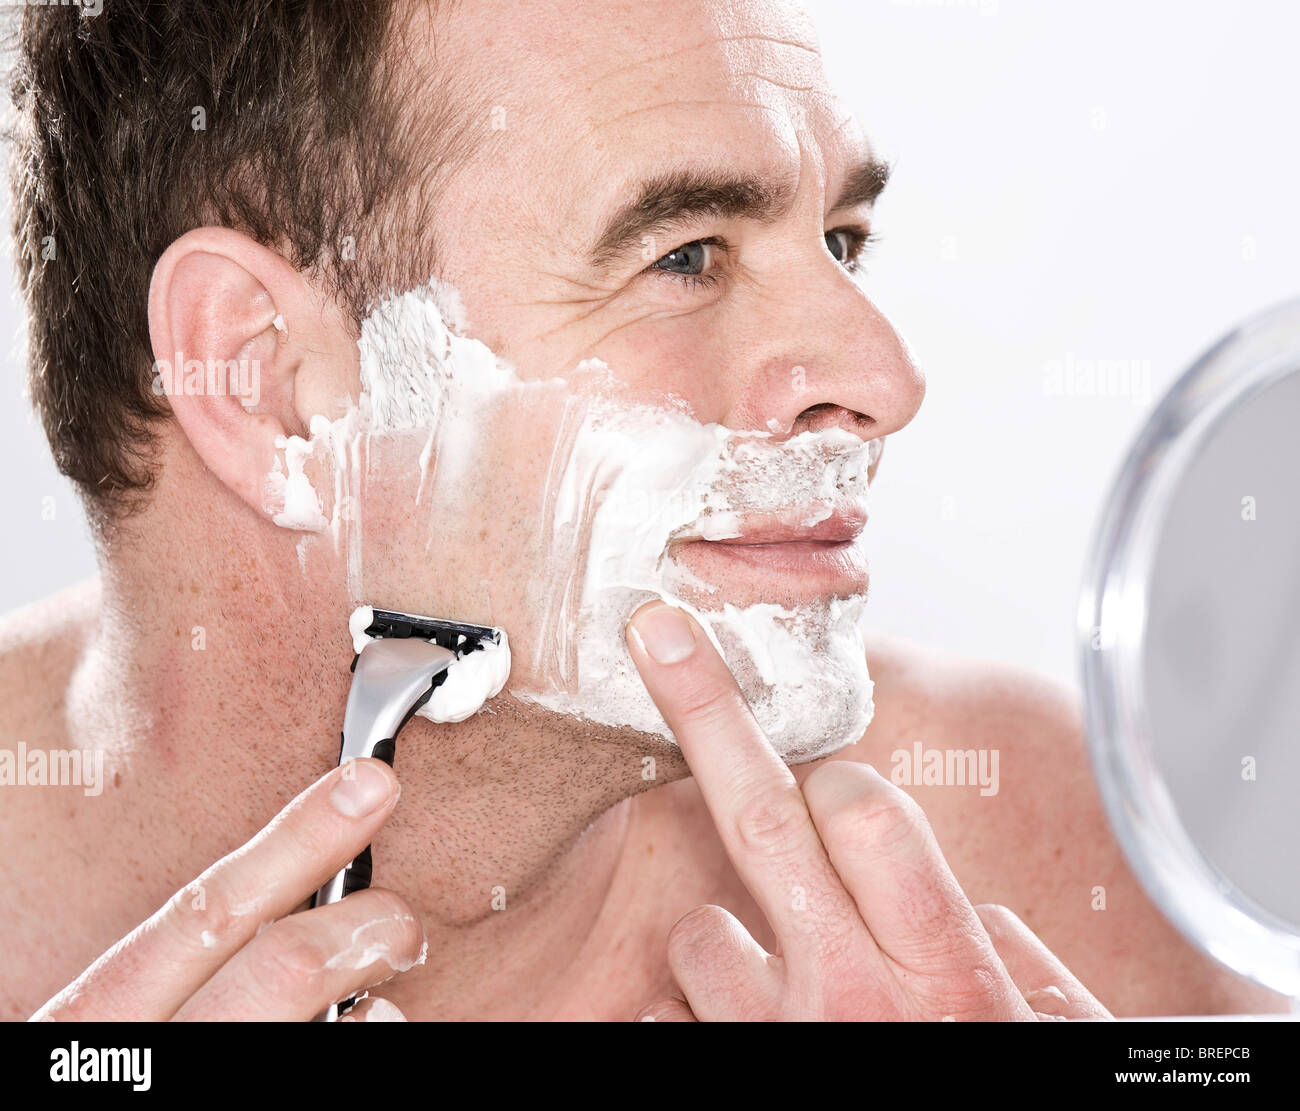 Что нужно после бритья. Бритье лица. Мужское бритье лица. Бритье кожи.